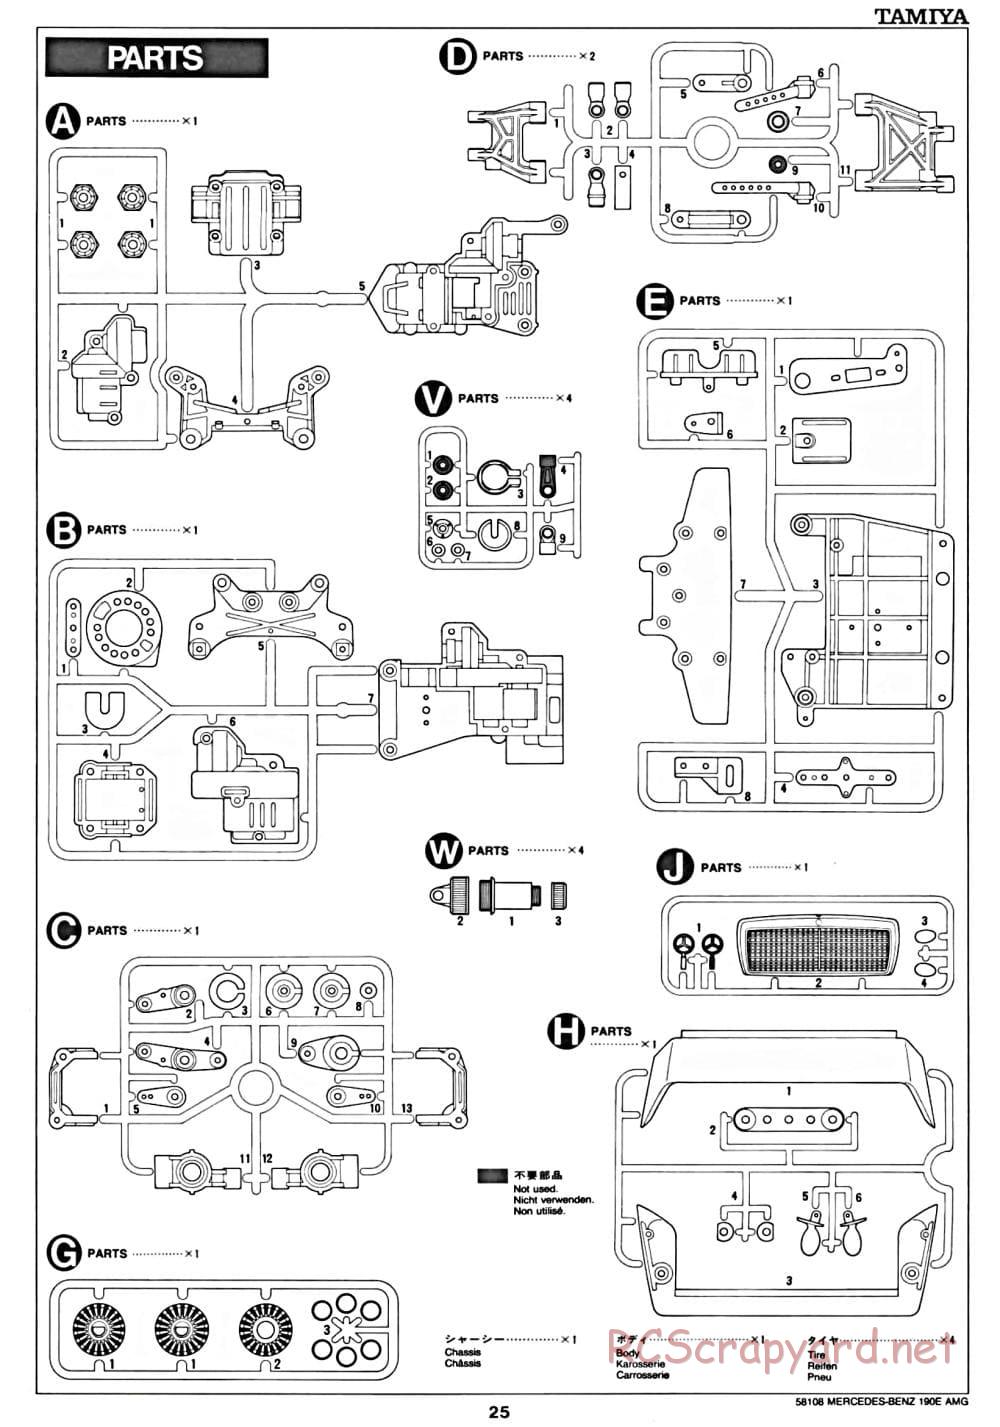 Tamiya - Mercedes Benz 190E Evo.II AMG - TA-01 Chassis - Manual - Page 25